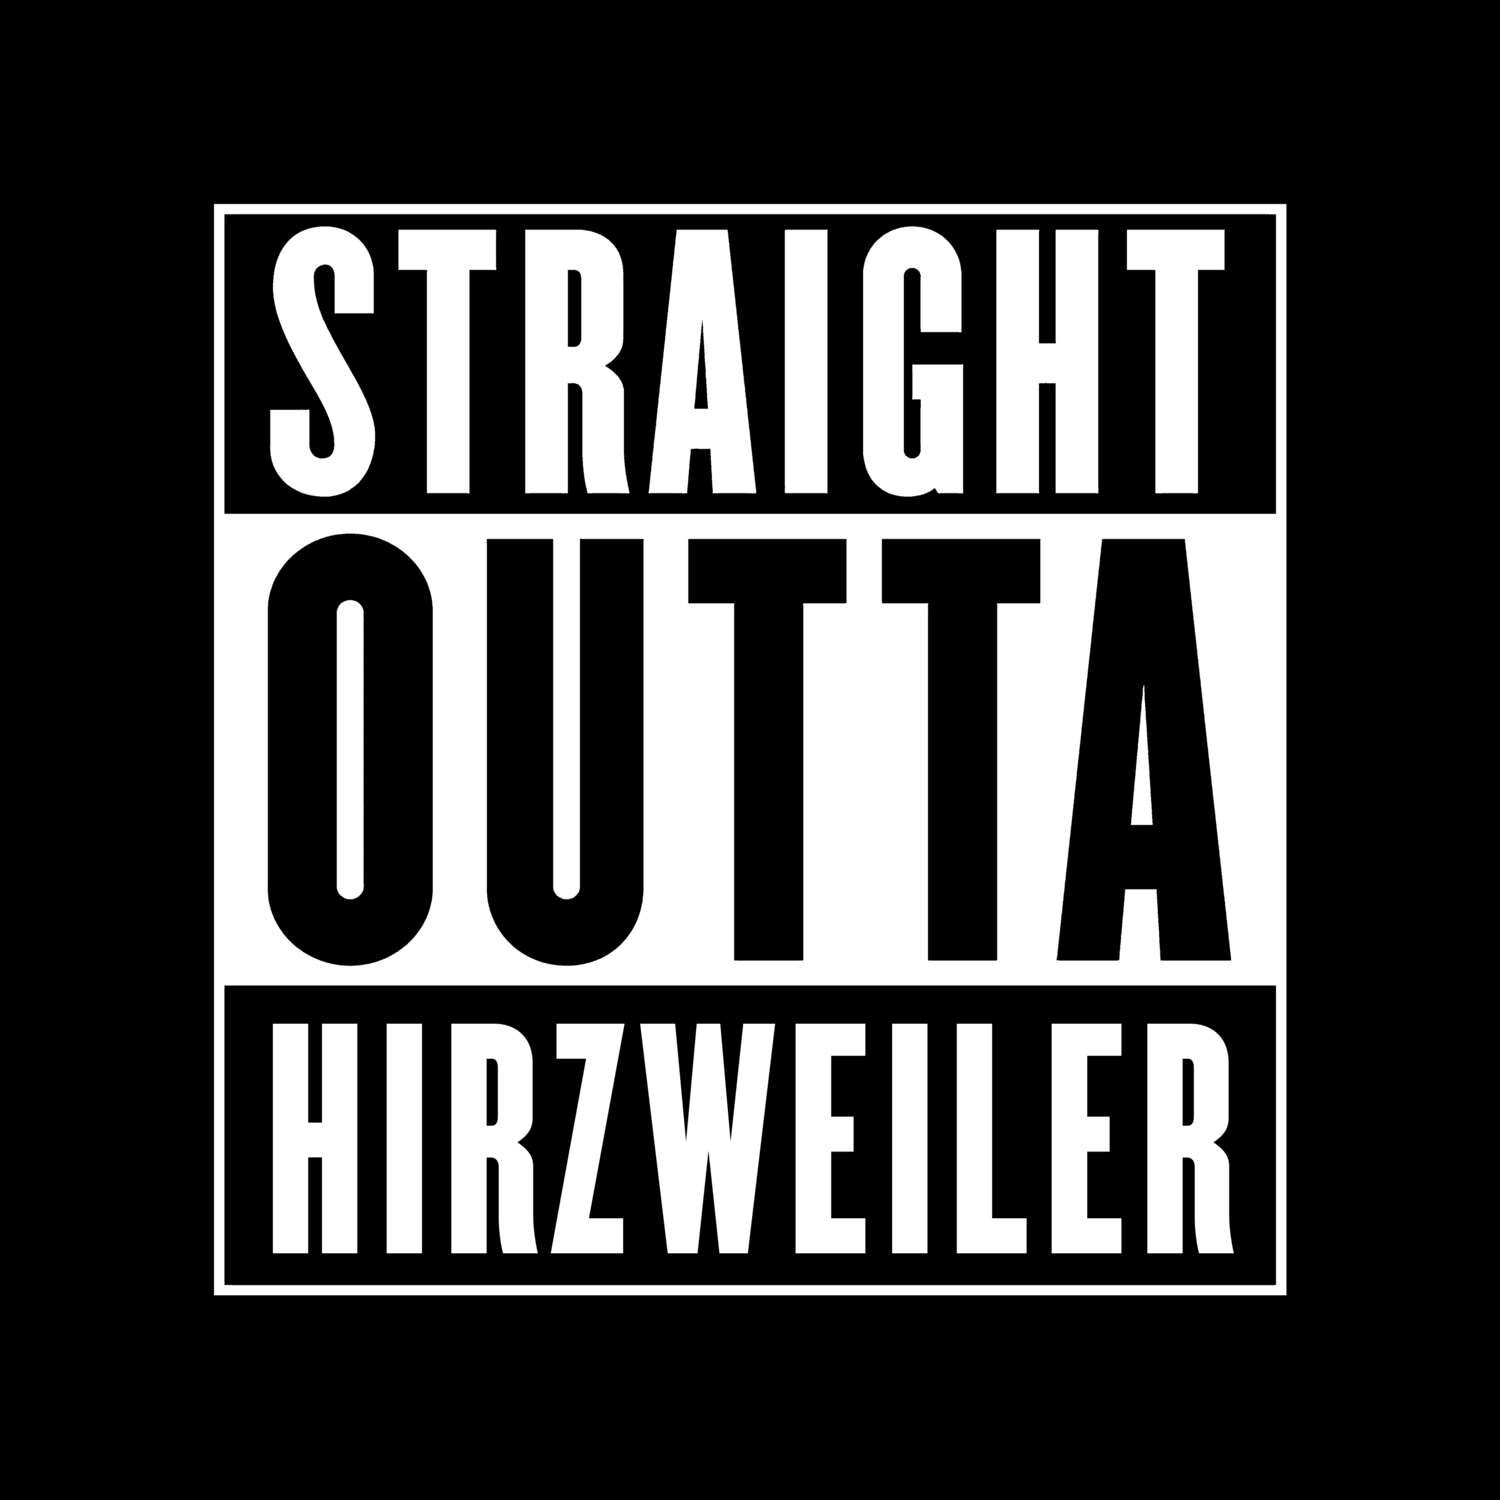 Hirzweiler T-Shirt »Straight Outta«